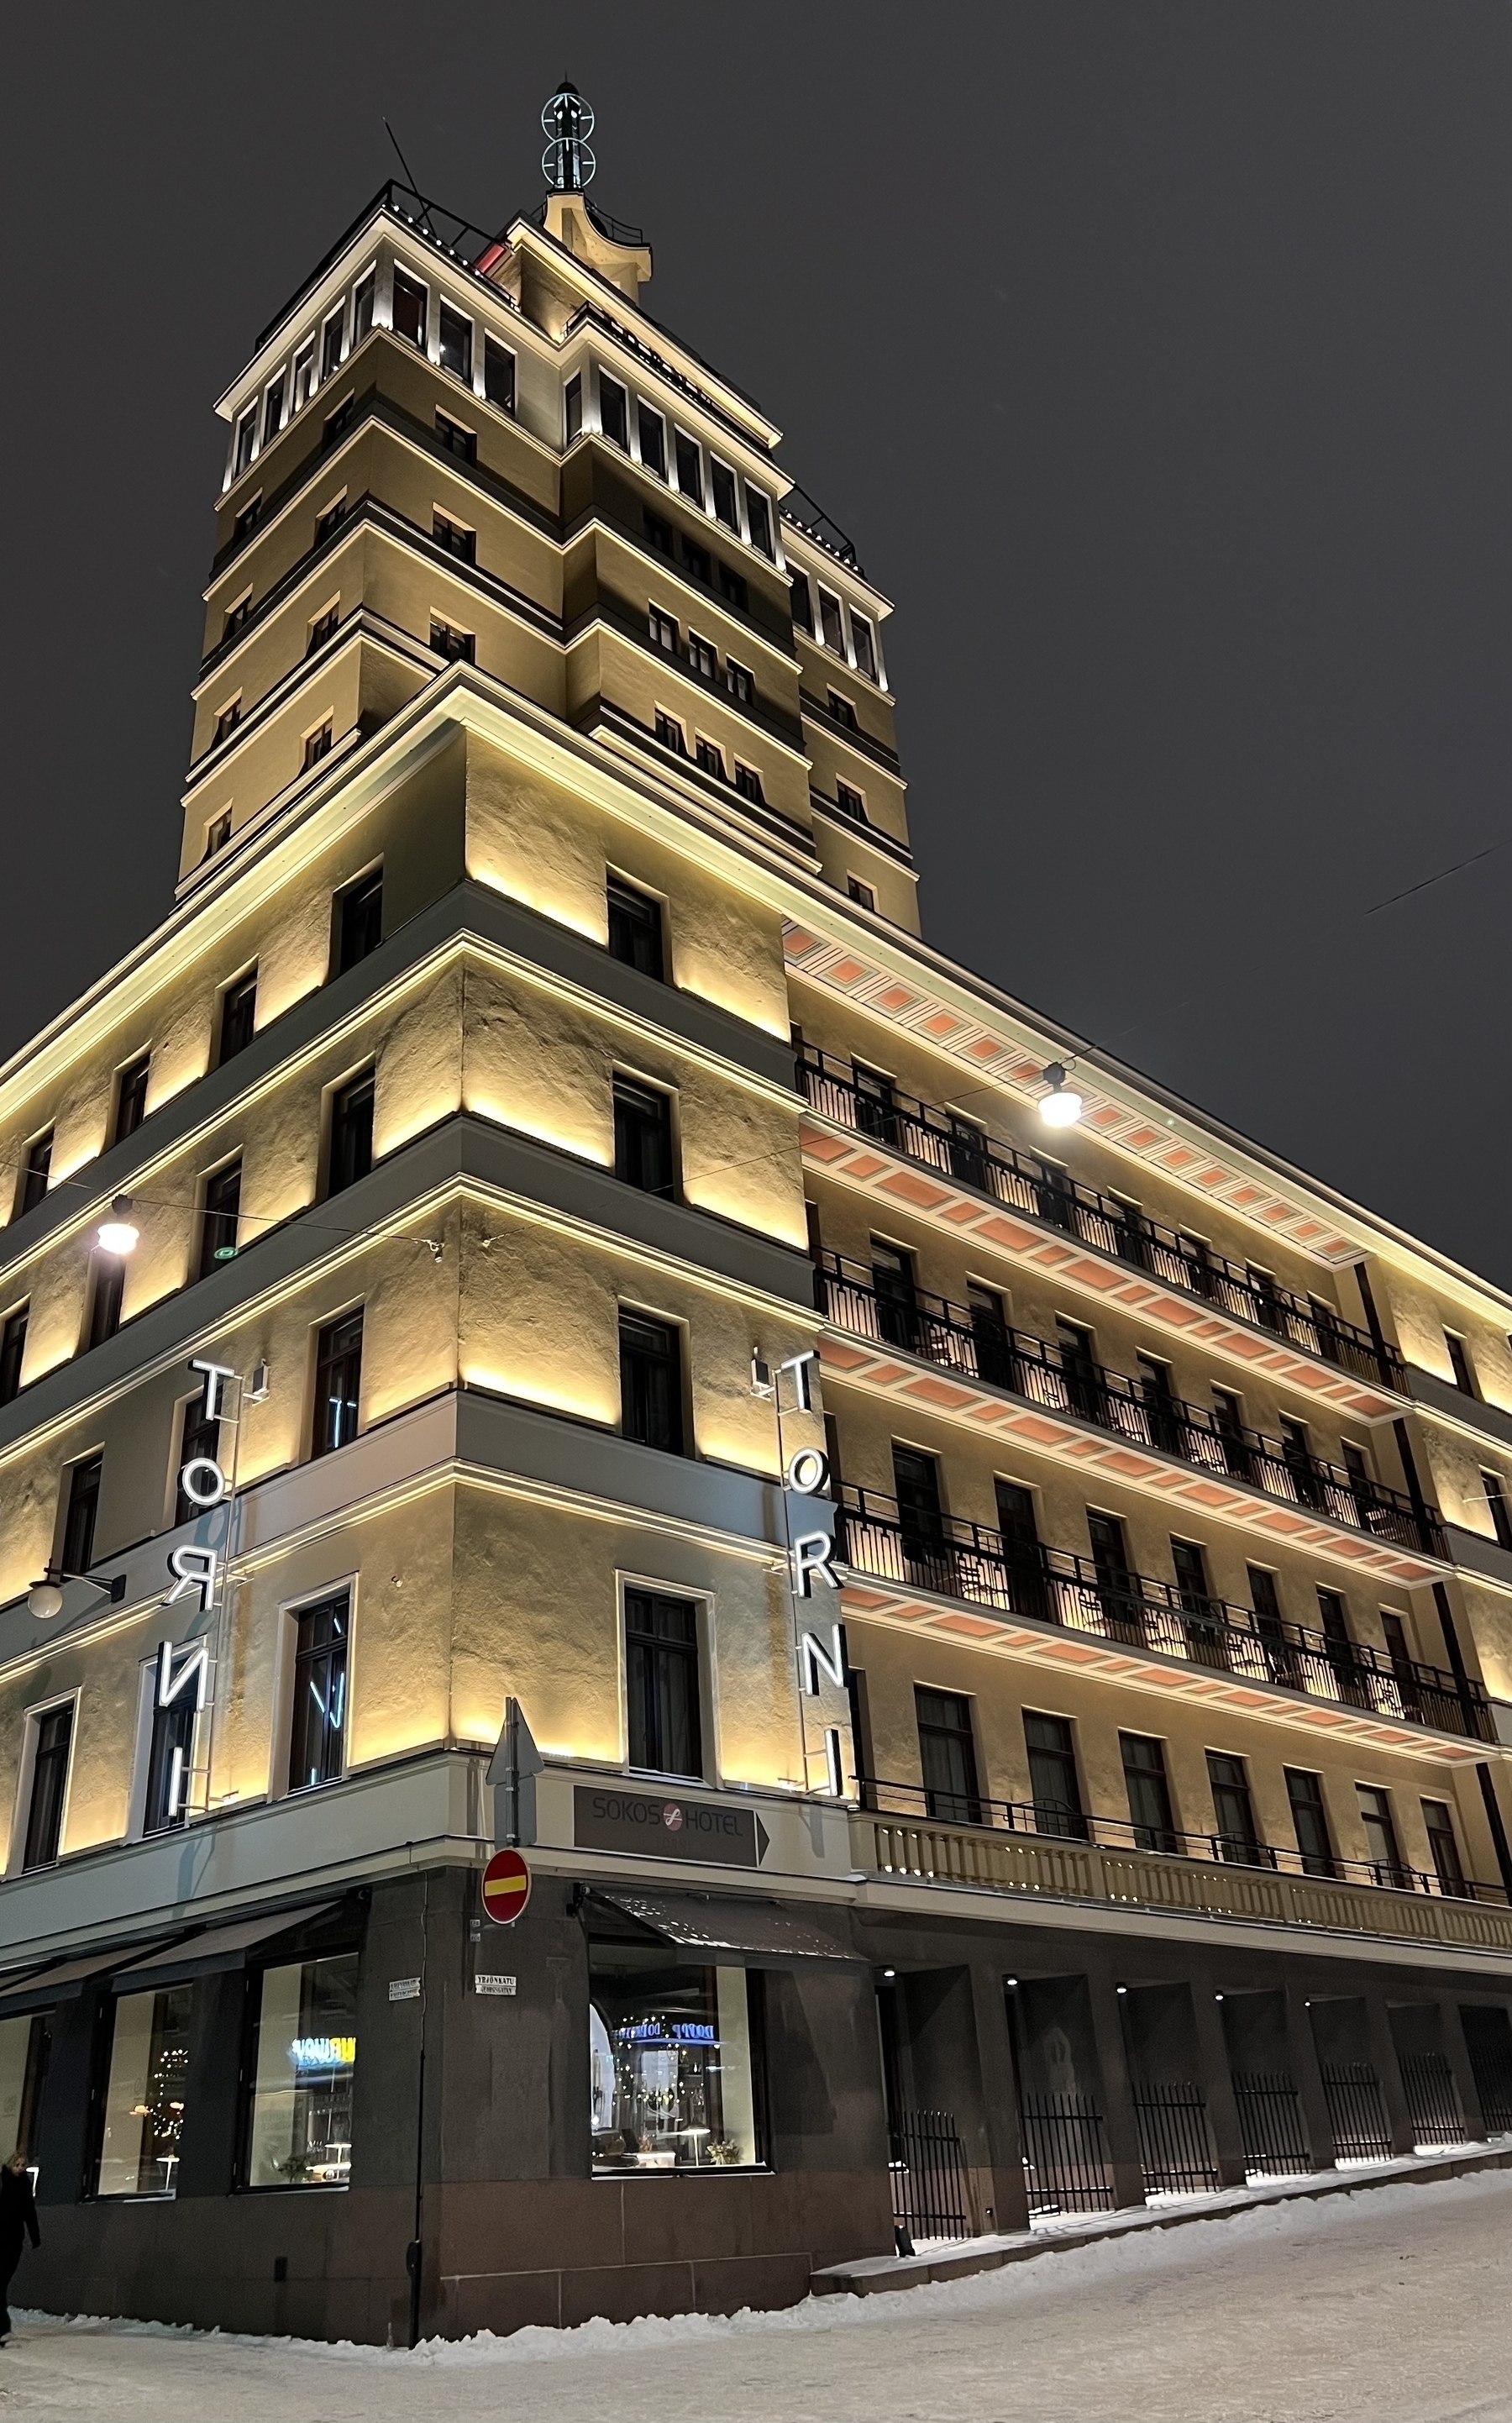 Torni hotel at night